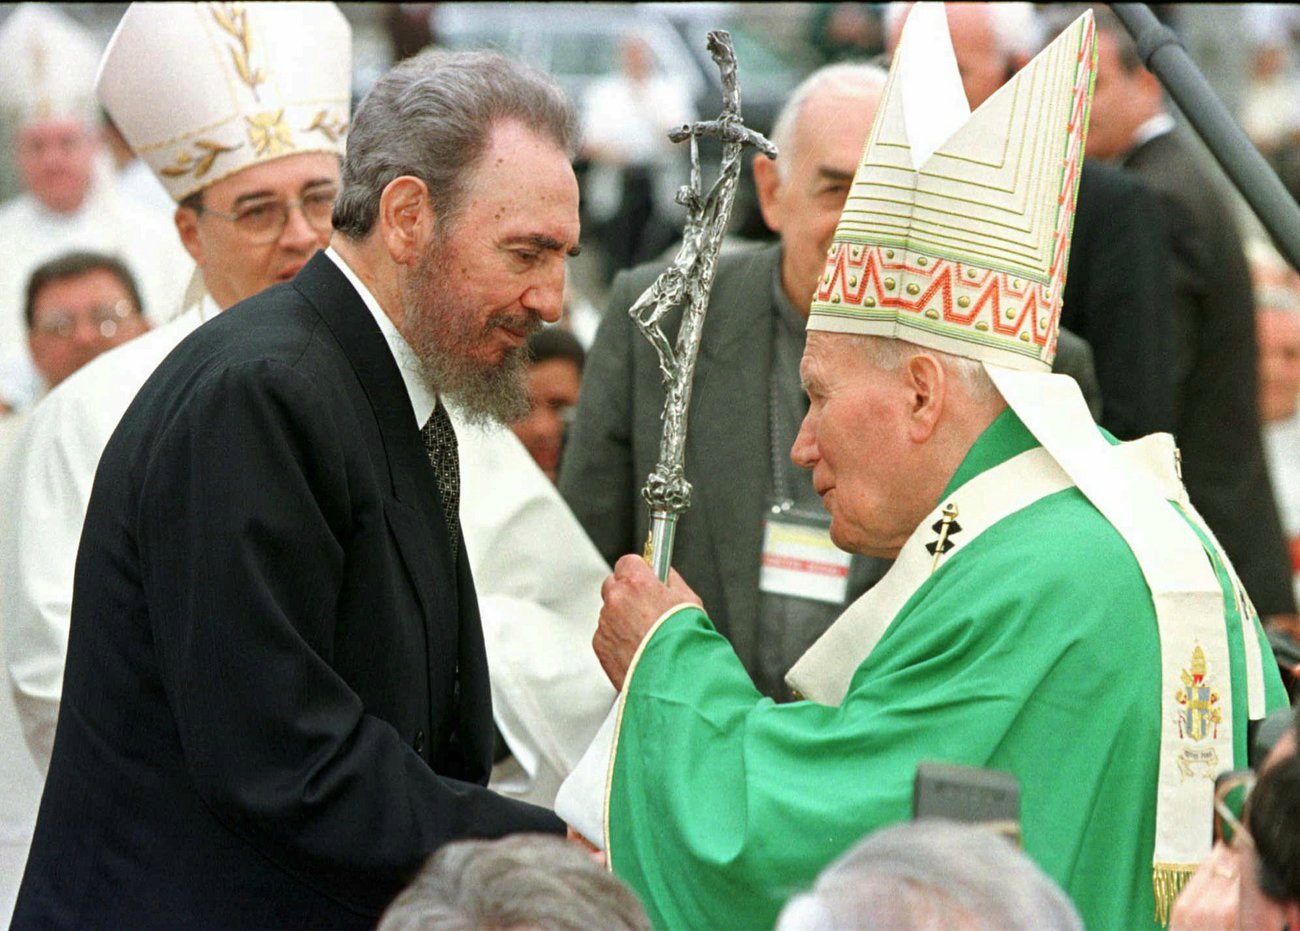 La visite historique du pape à La Havane en 1998, marque un tournant dans les relations entre Cuba et l'Eglise. (Photo: Keystone)